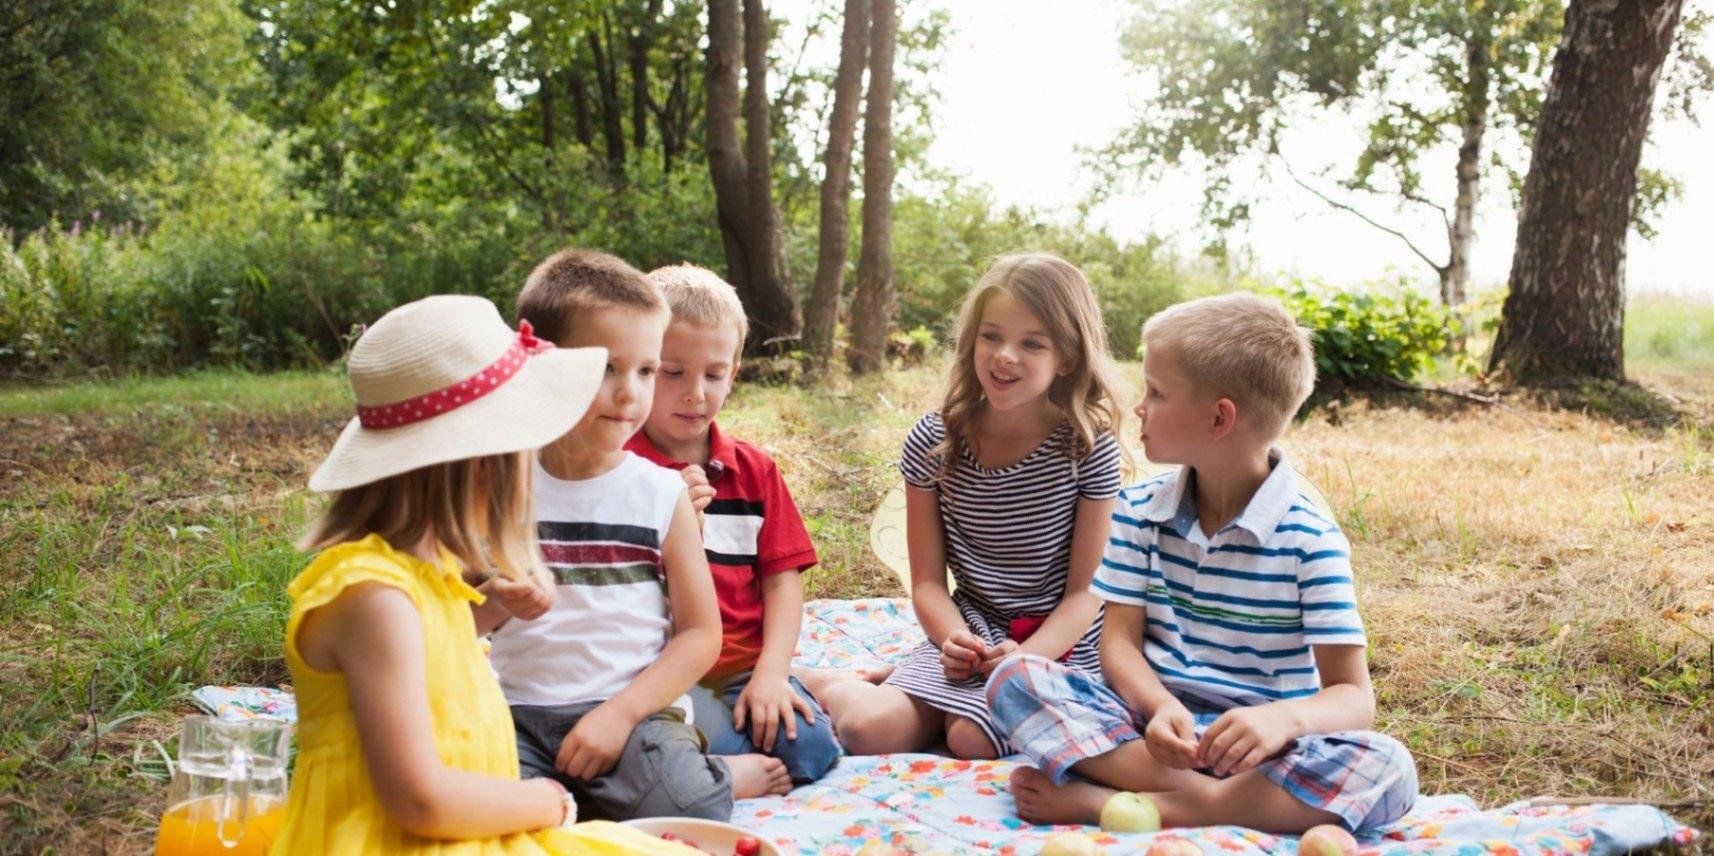 Описание пикника. Пикник для детей в детском саду. Пикник на природе. Школьники на пикнике. Дети на пикнике в парке.